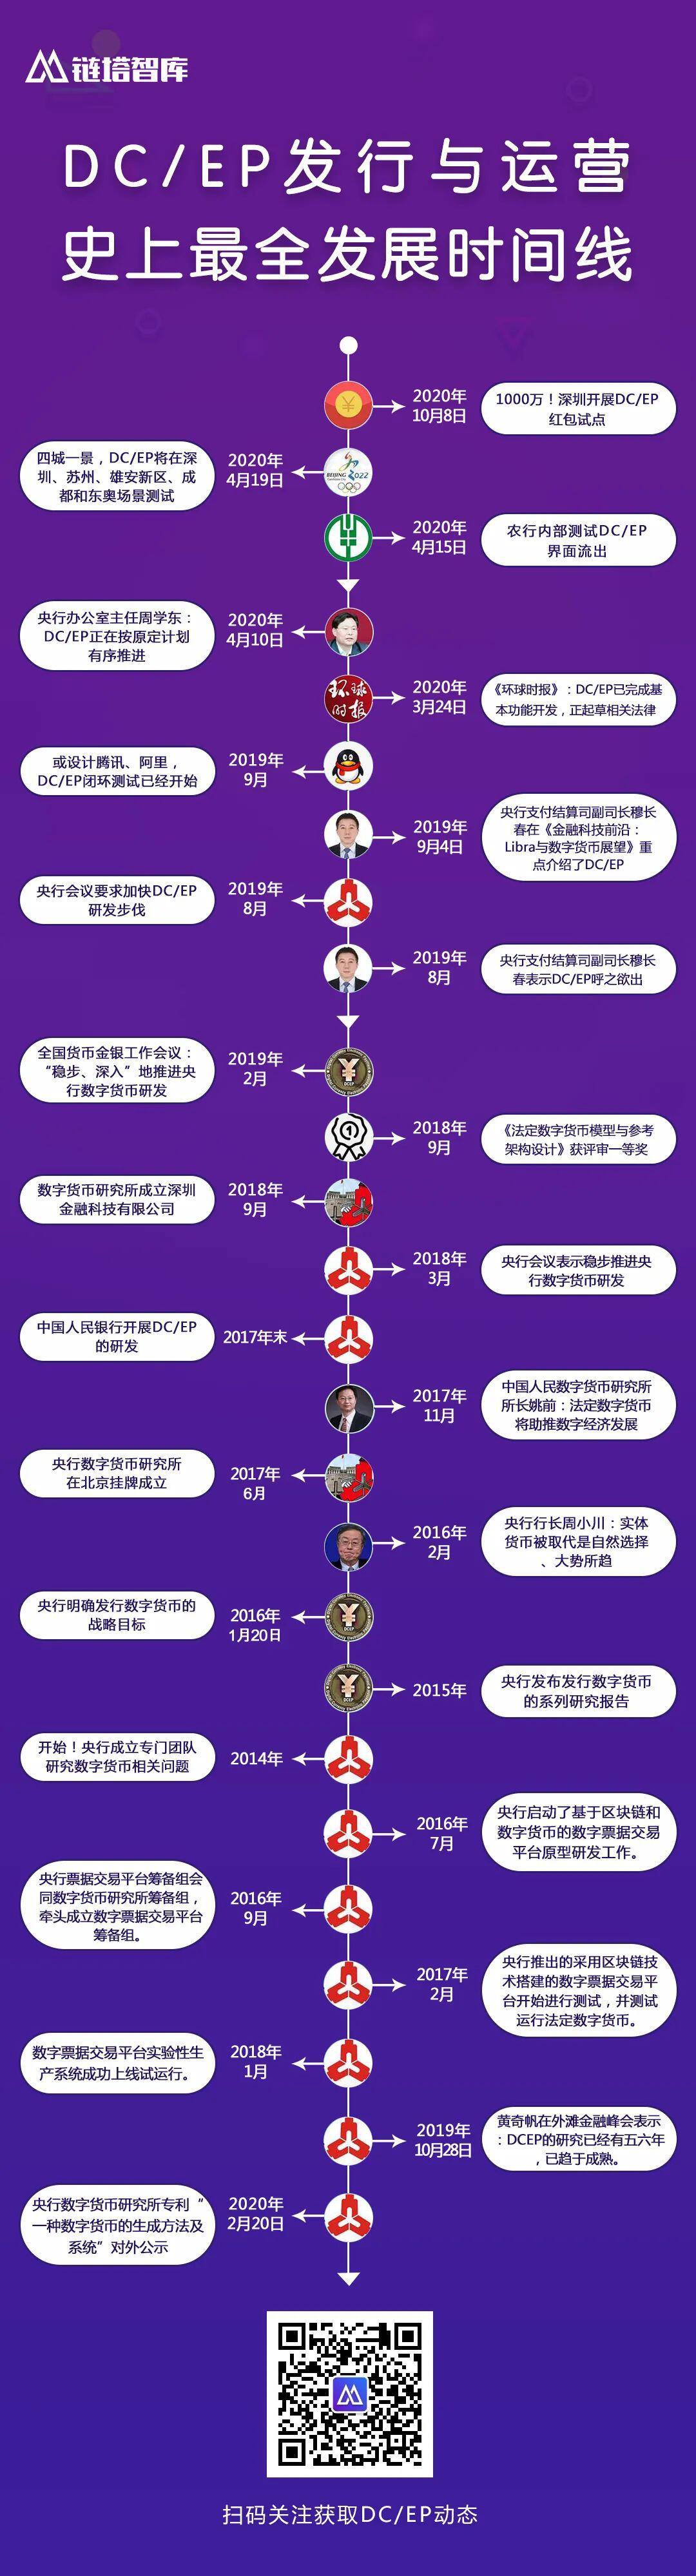 献礼深圳特区40周年，千万数字人民币红包全球首发